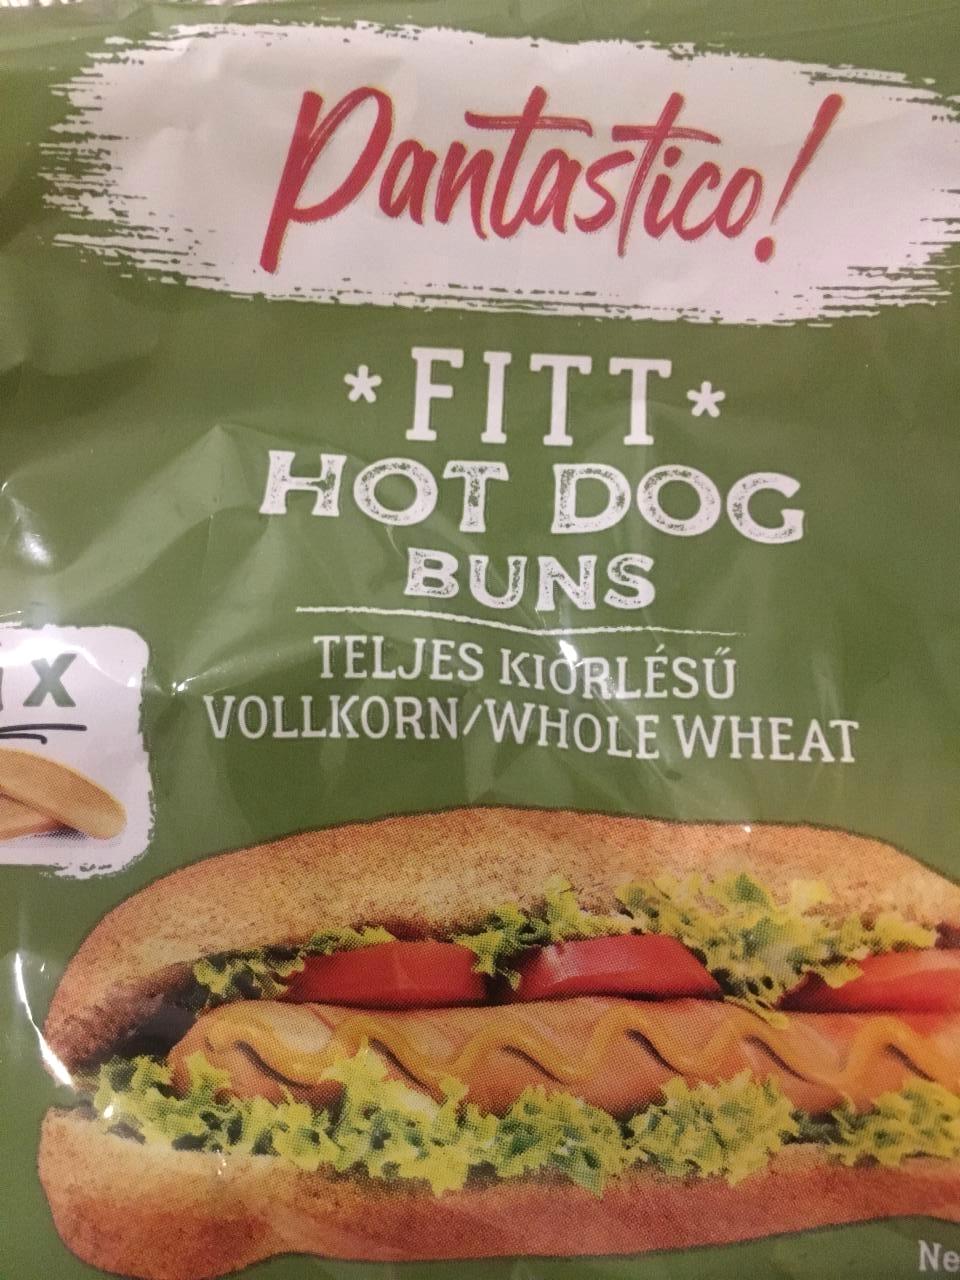 Képek - Fitt Hot Dog Buns Pantastico!